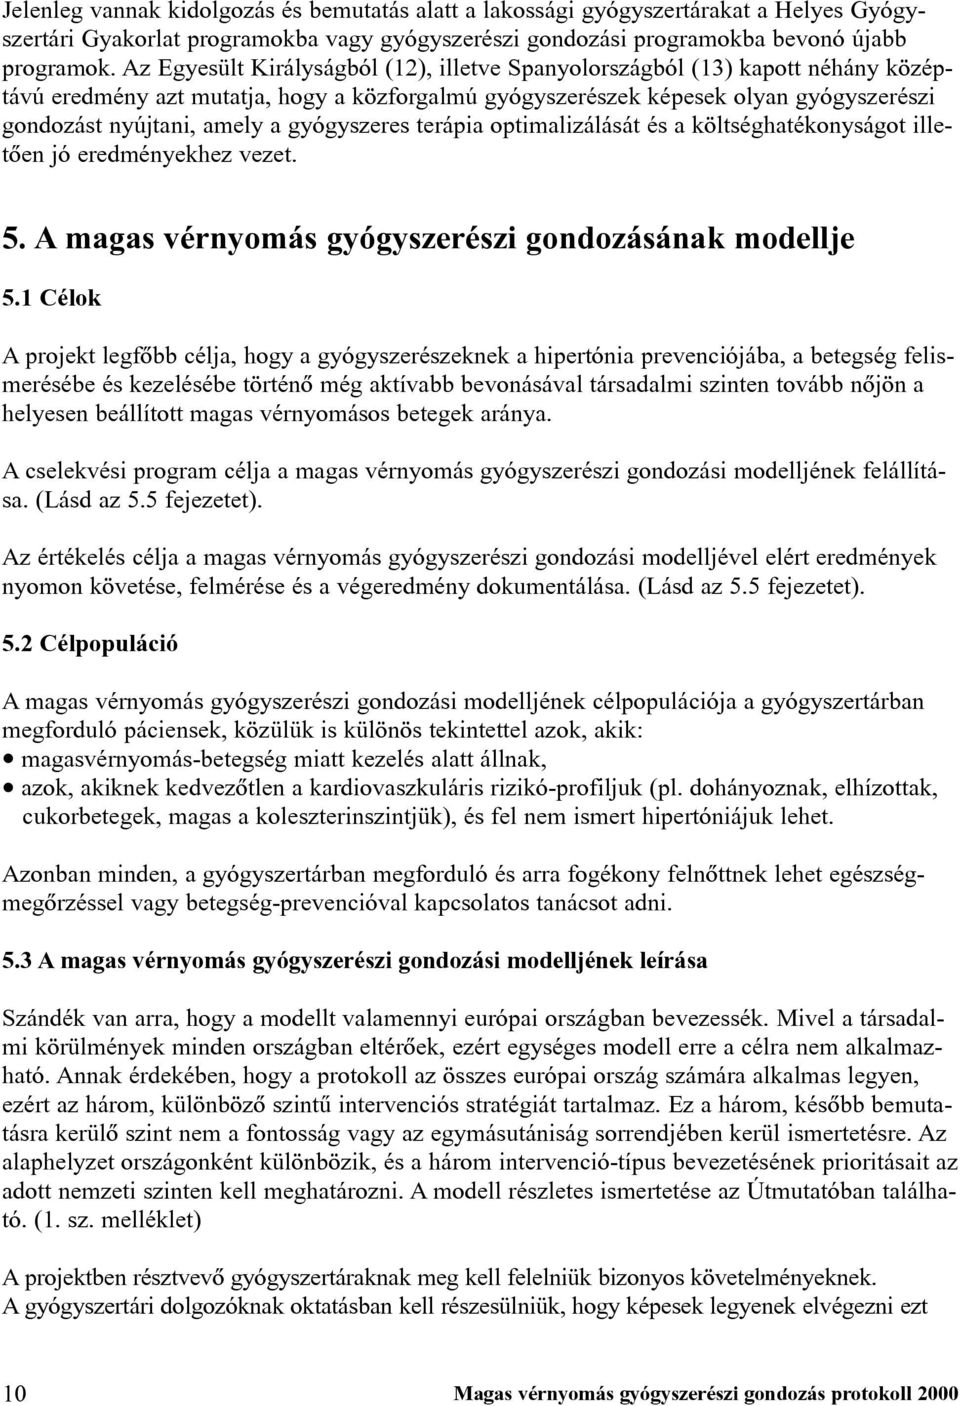 a magas vérnyomás kórházi kezelési standardja)